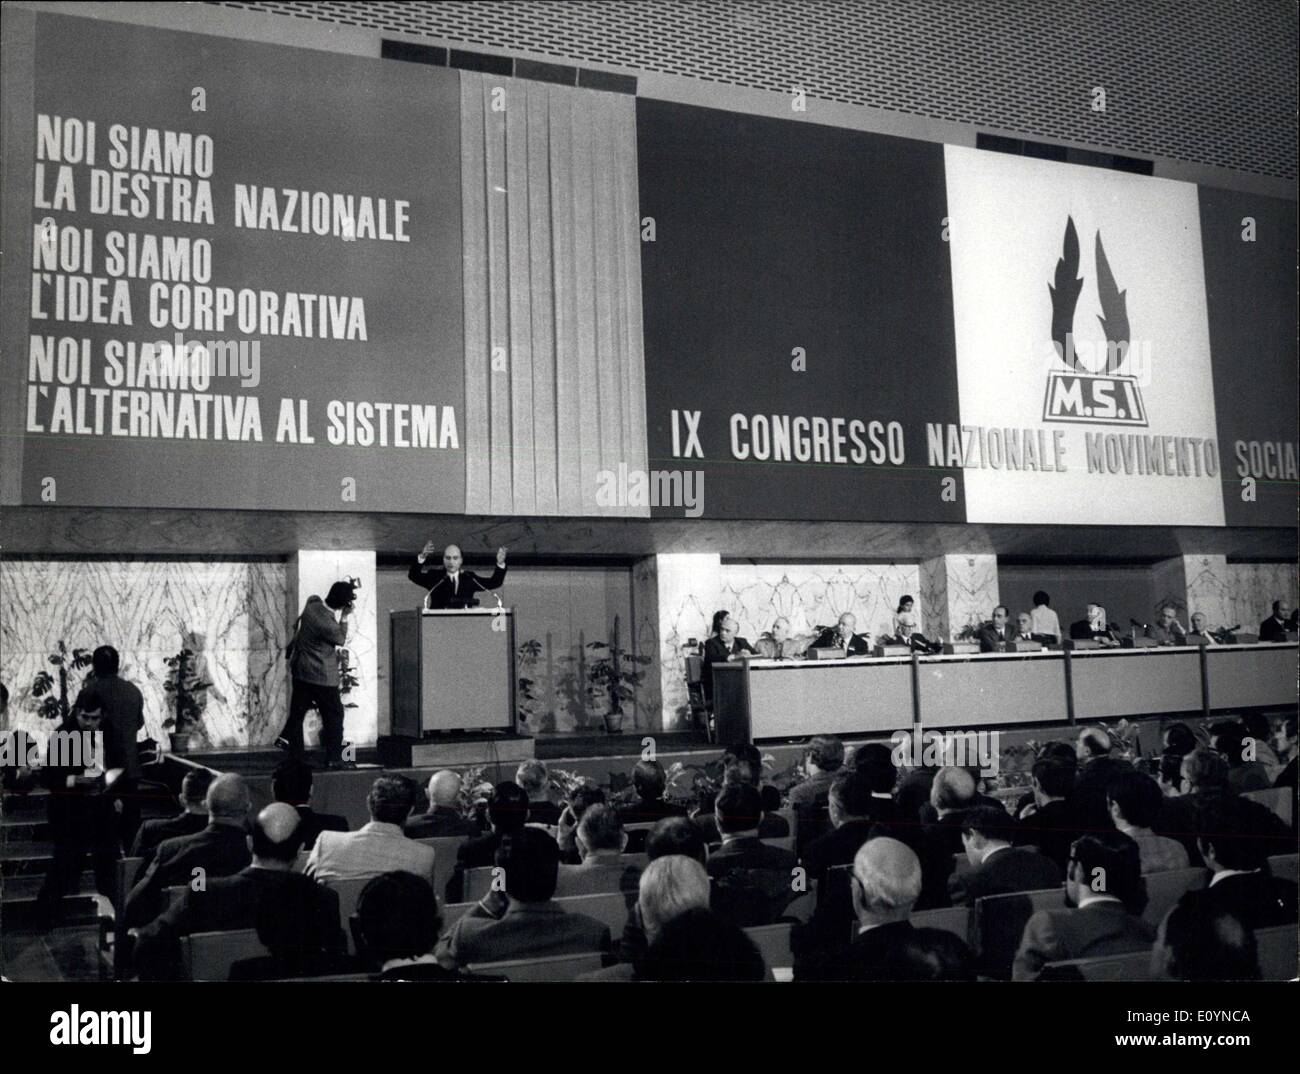 Nov. 22, 1970 - Il nono Congresso del Movimento Sociale Italiano, meglio noto come il neo partito fascista MSI , è stato aperto presso il Foto Stock